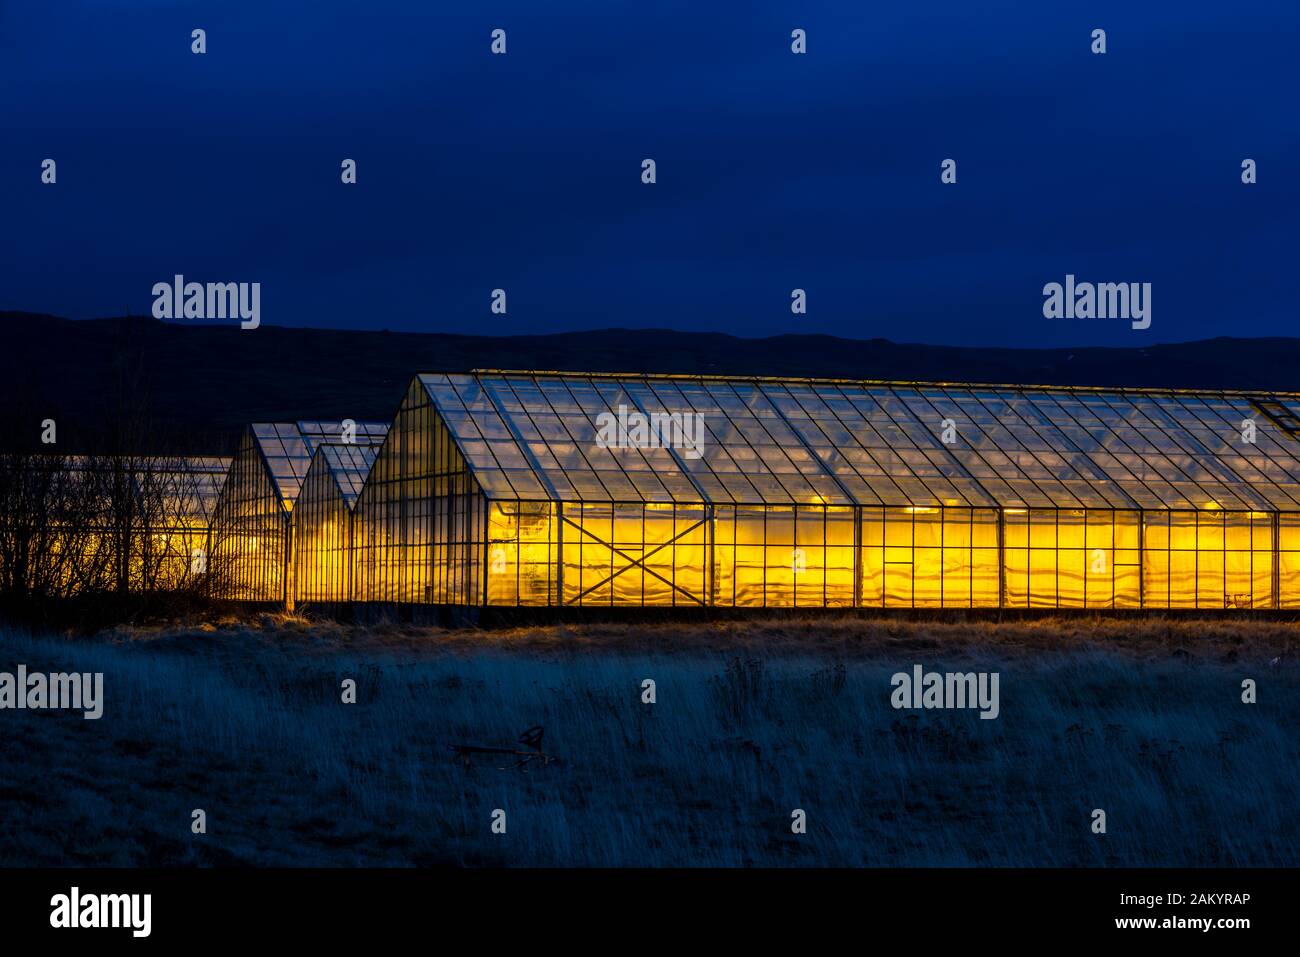 Illuminated greenhouses at dusk, heated with geothermal energy,Hveragerdi, Iceland Stock Photo